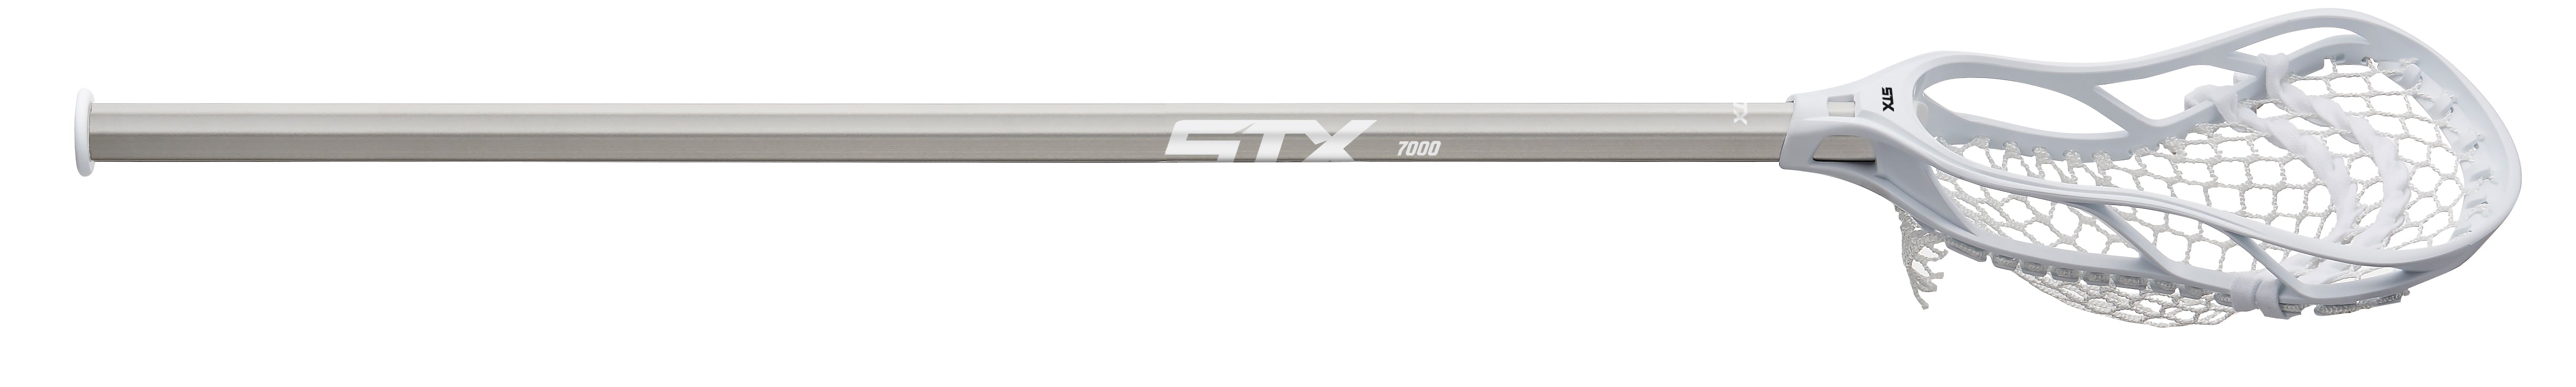 STX Stallion 300 Complete Stick